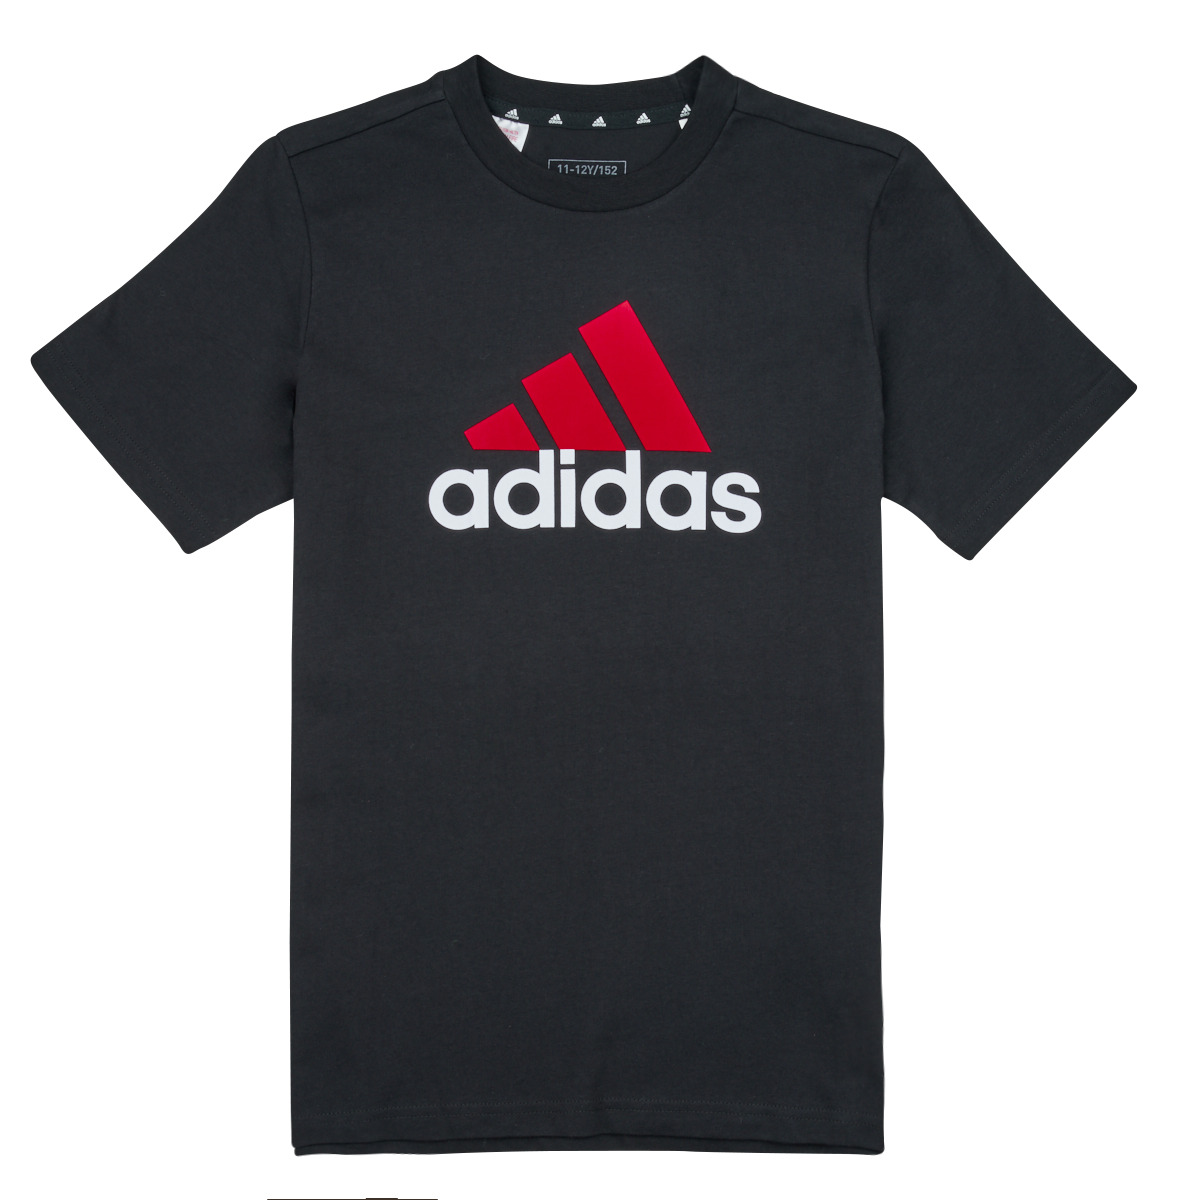 textil Pojkar T-shirts Adidas Sportswear BL 2 TEE Svart / Röd / Vit